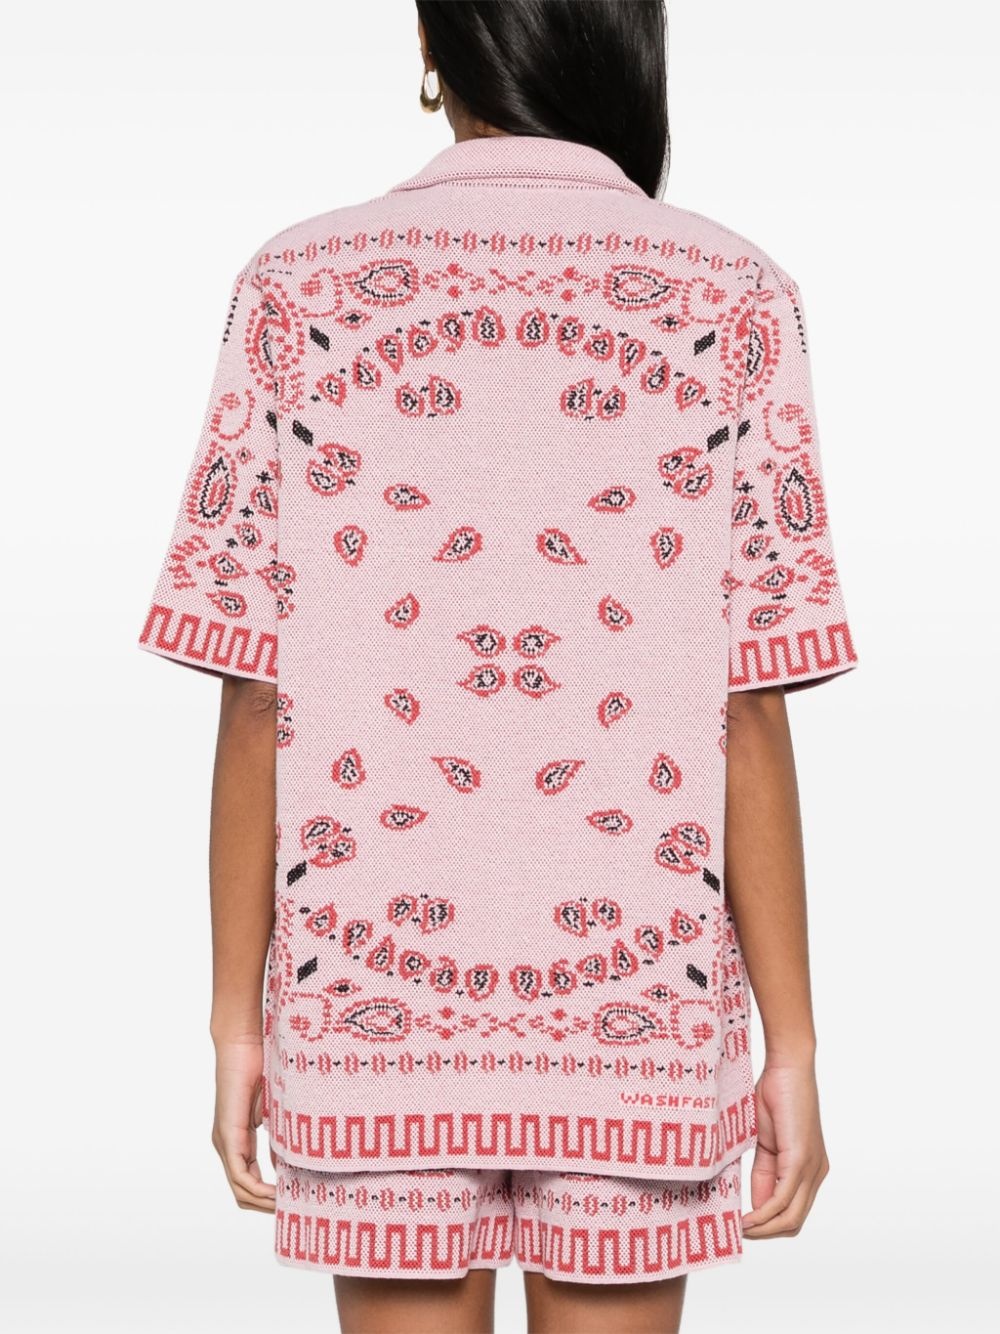 bandana knitted bowling shirt - 4